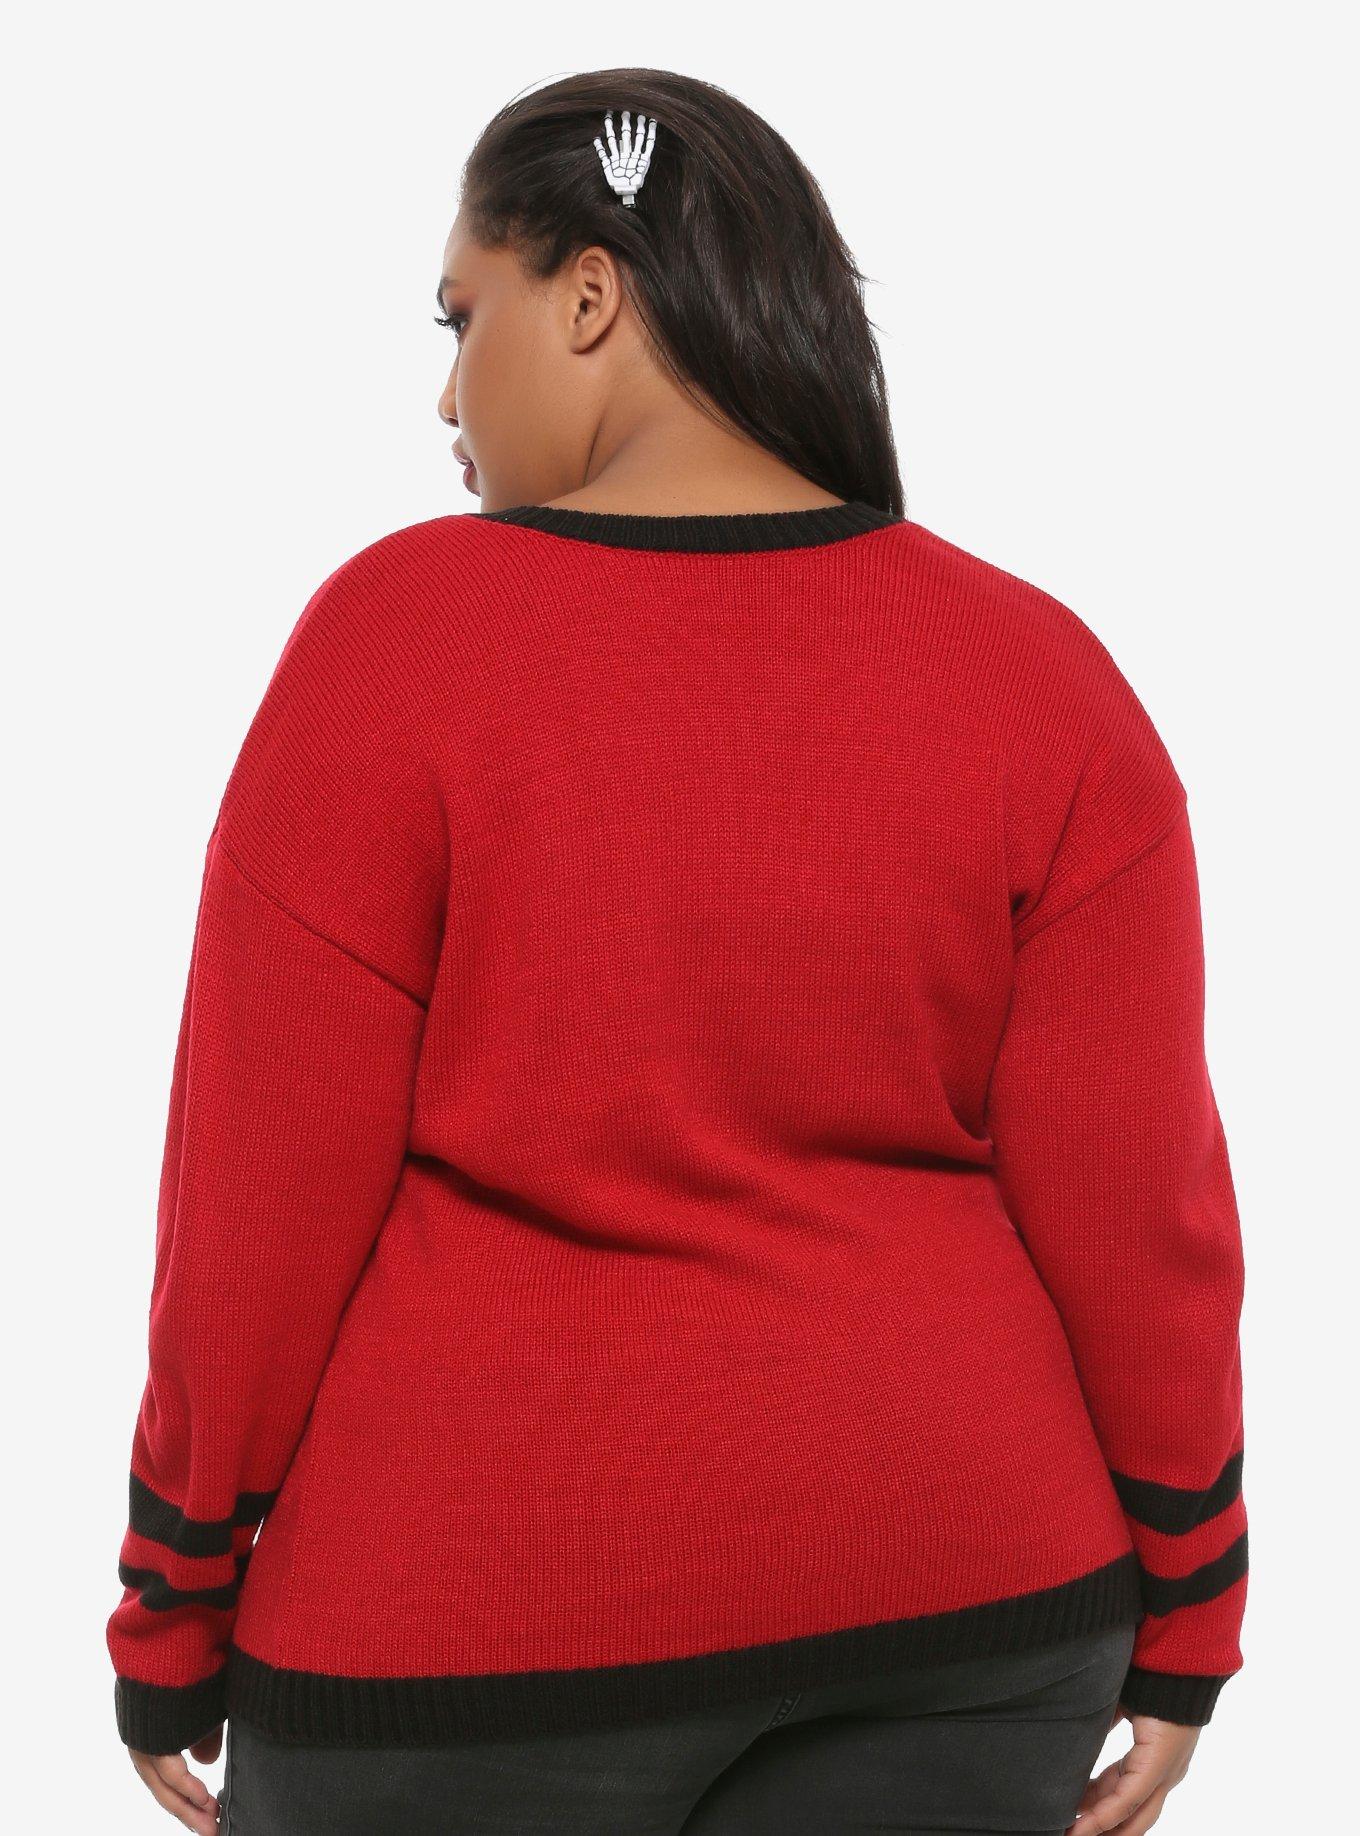 Dead Inside Girls Sweater Plus Size, BLACK, alternate